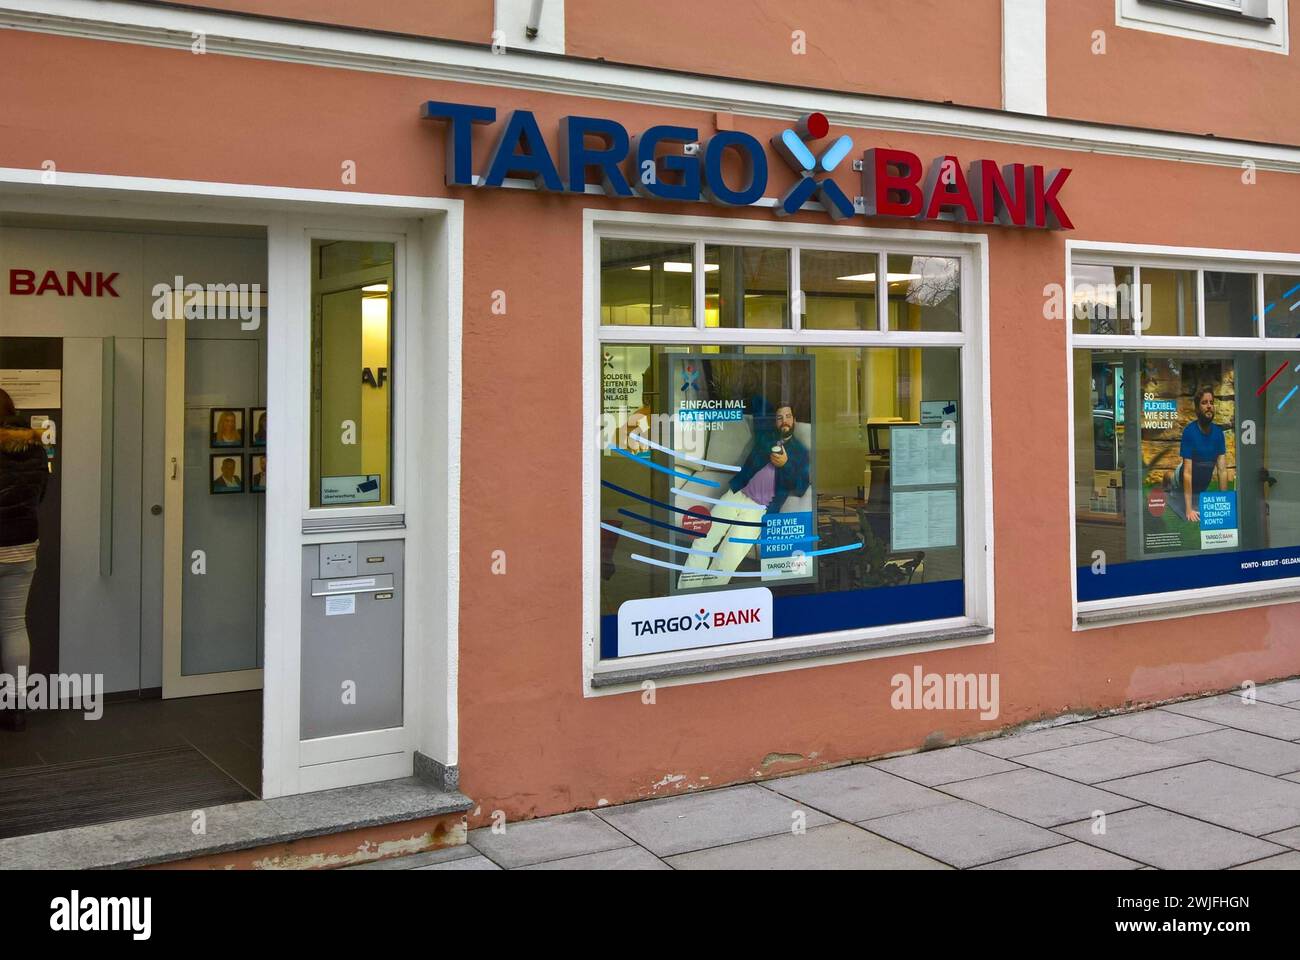 Die Targobank AG ist eine in Deutschland tätige Bank mit Sitz in Düsseldorf und ihrem Kundencenter in Duisburg. Seit 2008 ist sie Teil der französischen Genossenschaftsbank Credit Mutuel Alliance Federale mit Sitz in Strassburg, Frankreich. Sie firmierte bis 2010 als Citibank Privatkunden AG und Co KGaA und bis 1991 als Kundenkreditbank. Die Bank gehört mit rund 3,5 Millionen Kunden - Stand 2021 - zu den grossen Banken für Privat-, Geschäfts- und Firmenkunden in Deutschland und betreibt 303 Standorte in über 250 Städten in Deutschland. Sie war zunächst ein im Privatkundengeschäft tätiges Insti Stock Photo